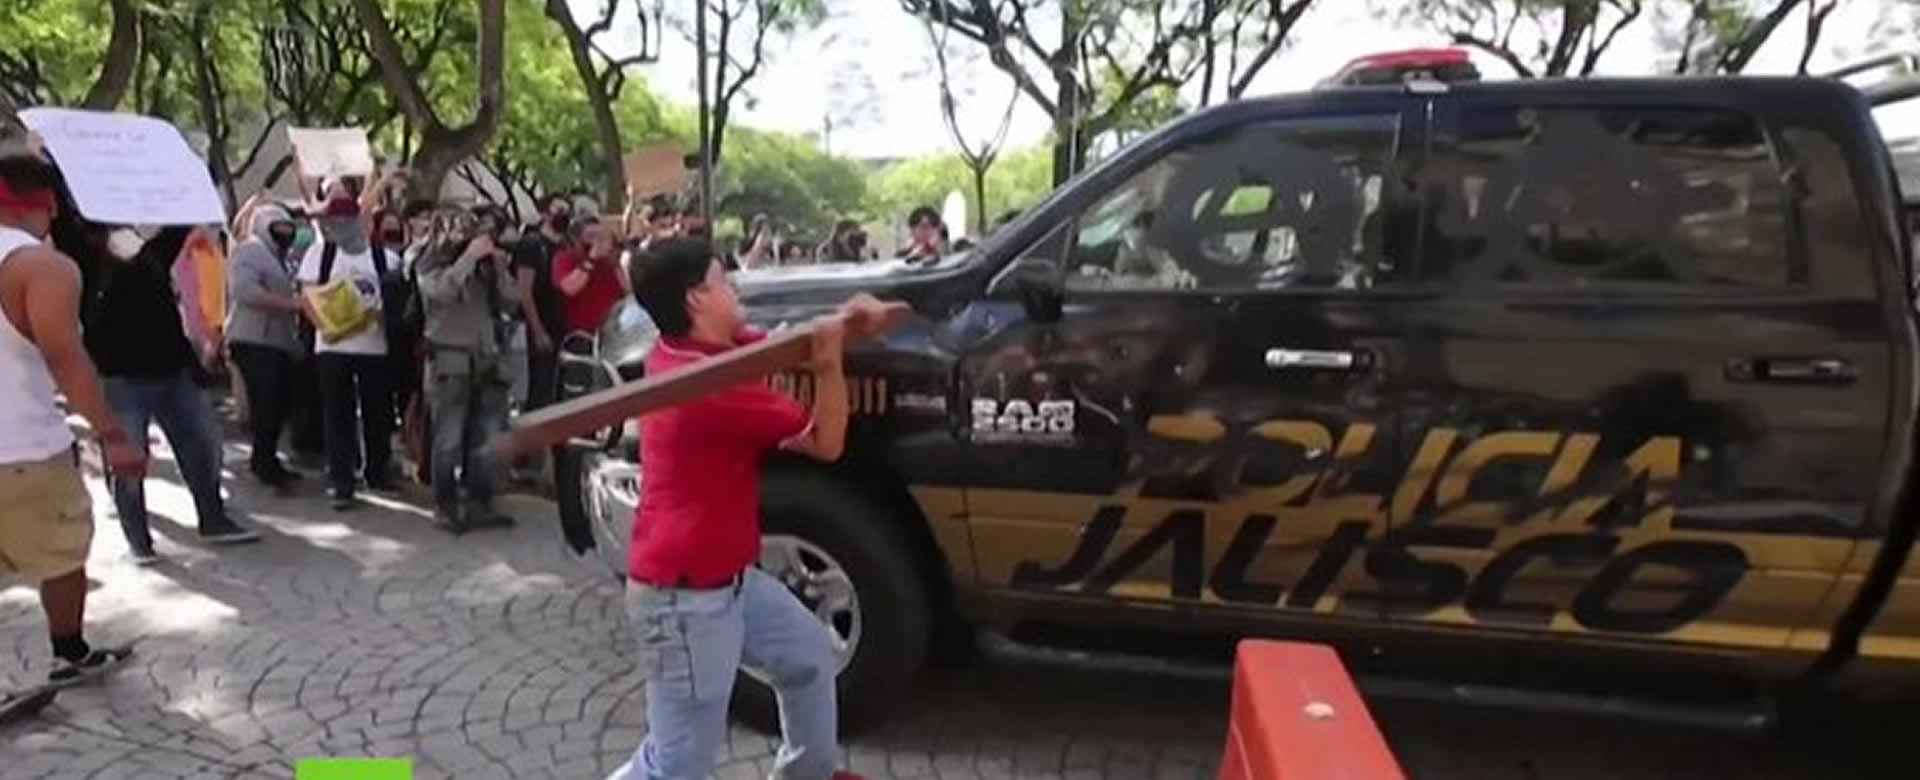 Manifestante golpea patrulla en medio de protestas en México.